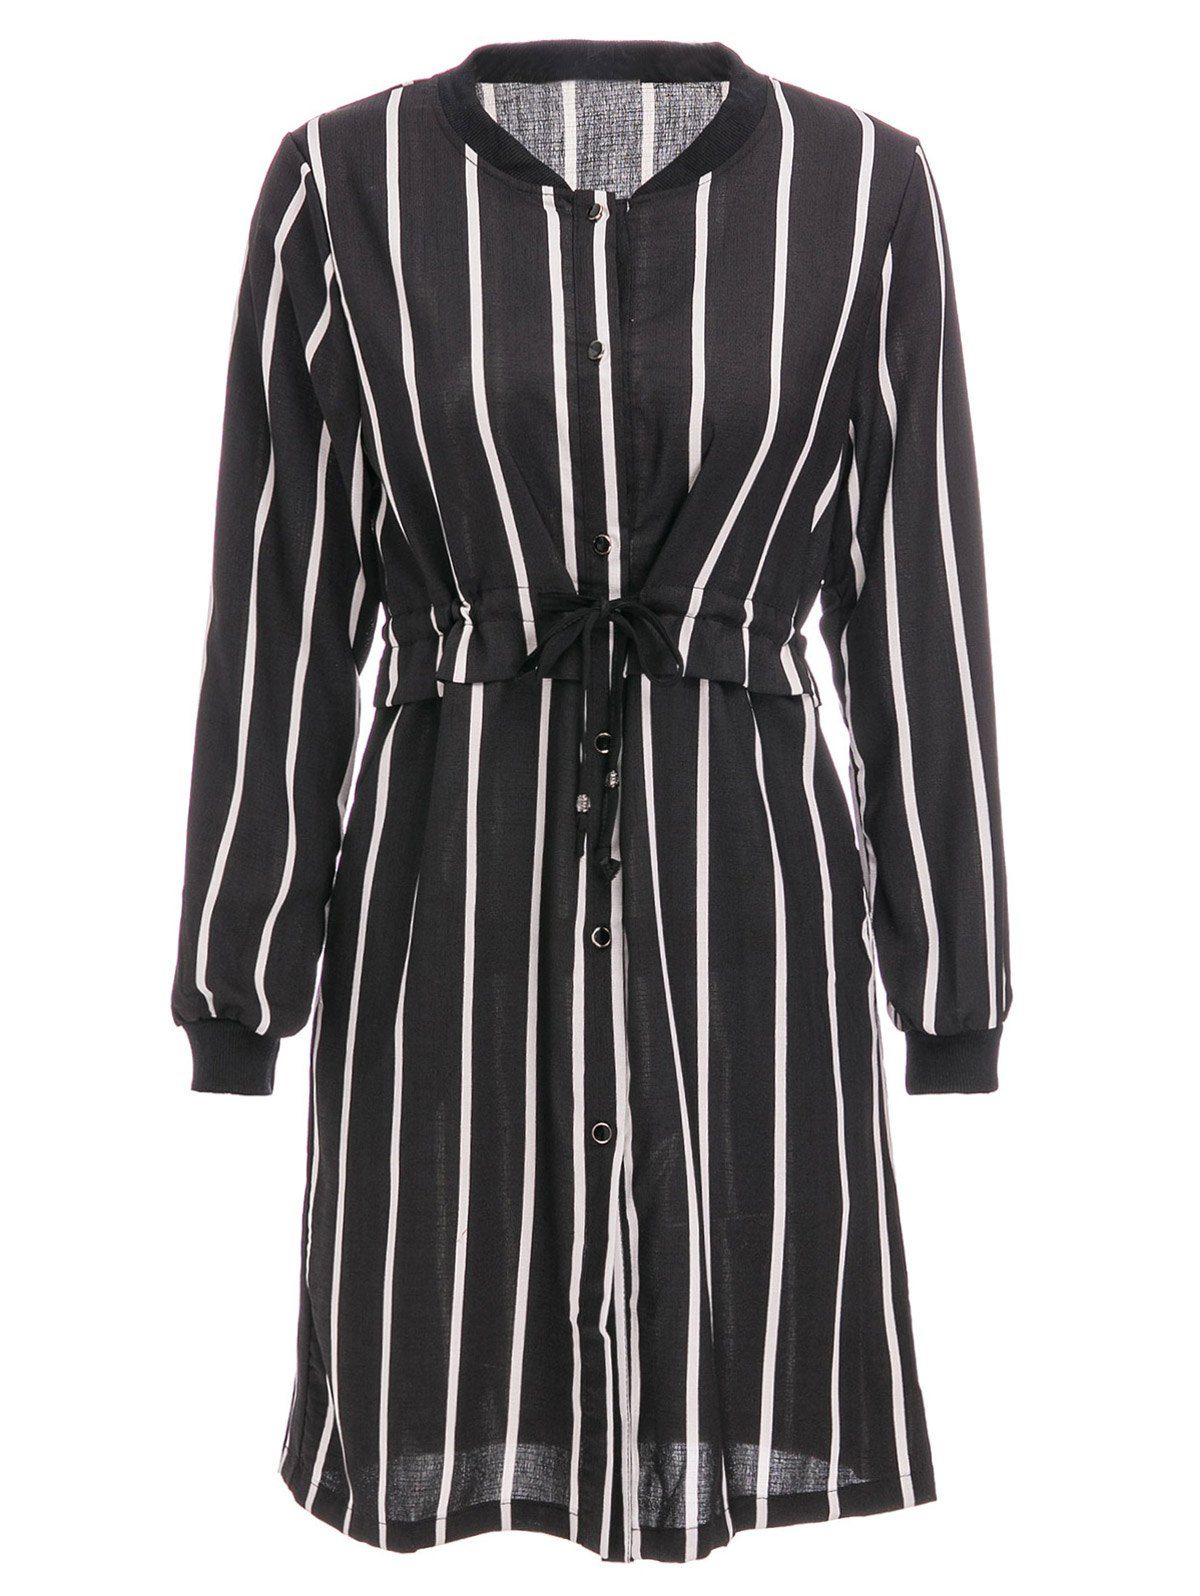 Trendy Vertical Stripe Long Sleeve Button Up Shirt Dress  